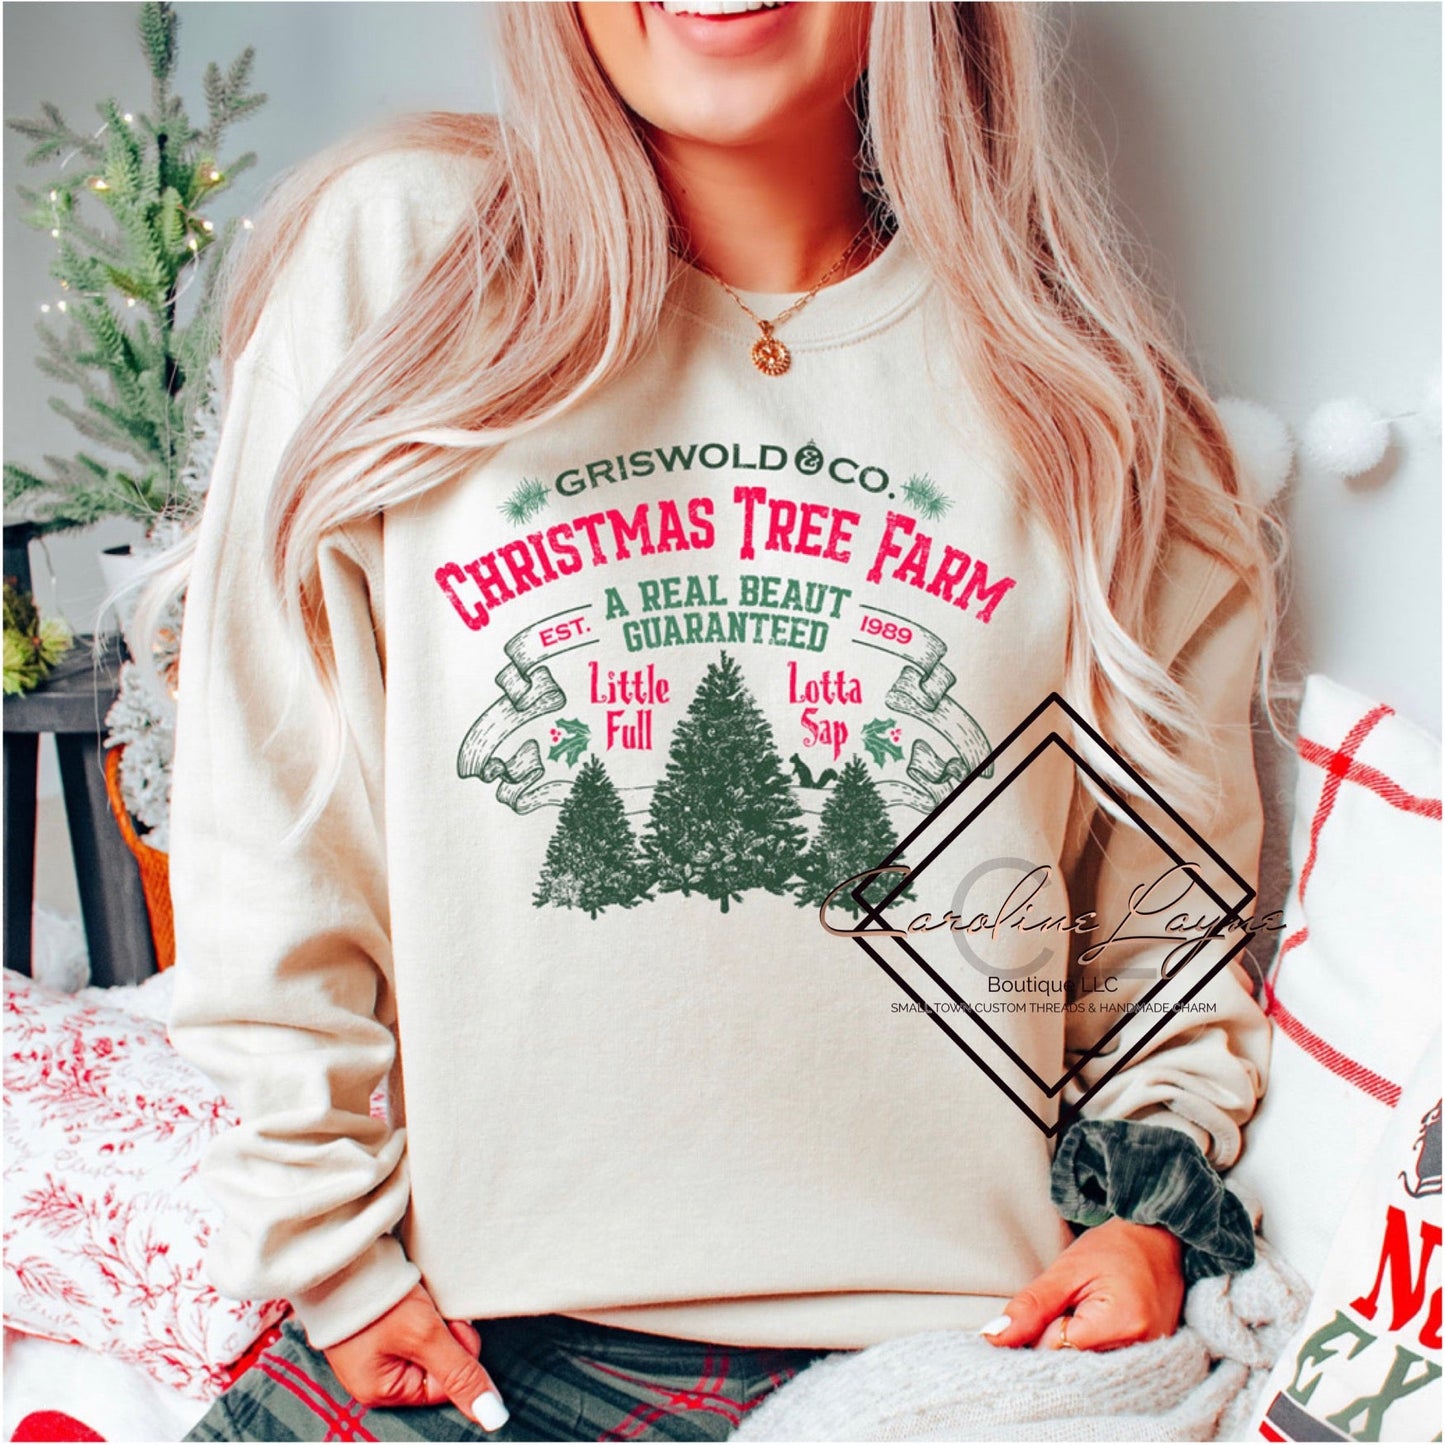 Christmas tree farm Sweatshirt - Caroline Layne Boutique LLC